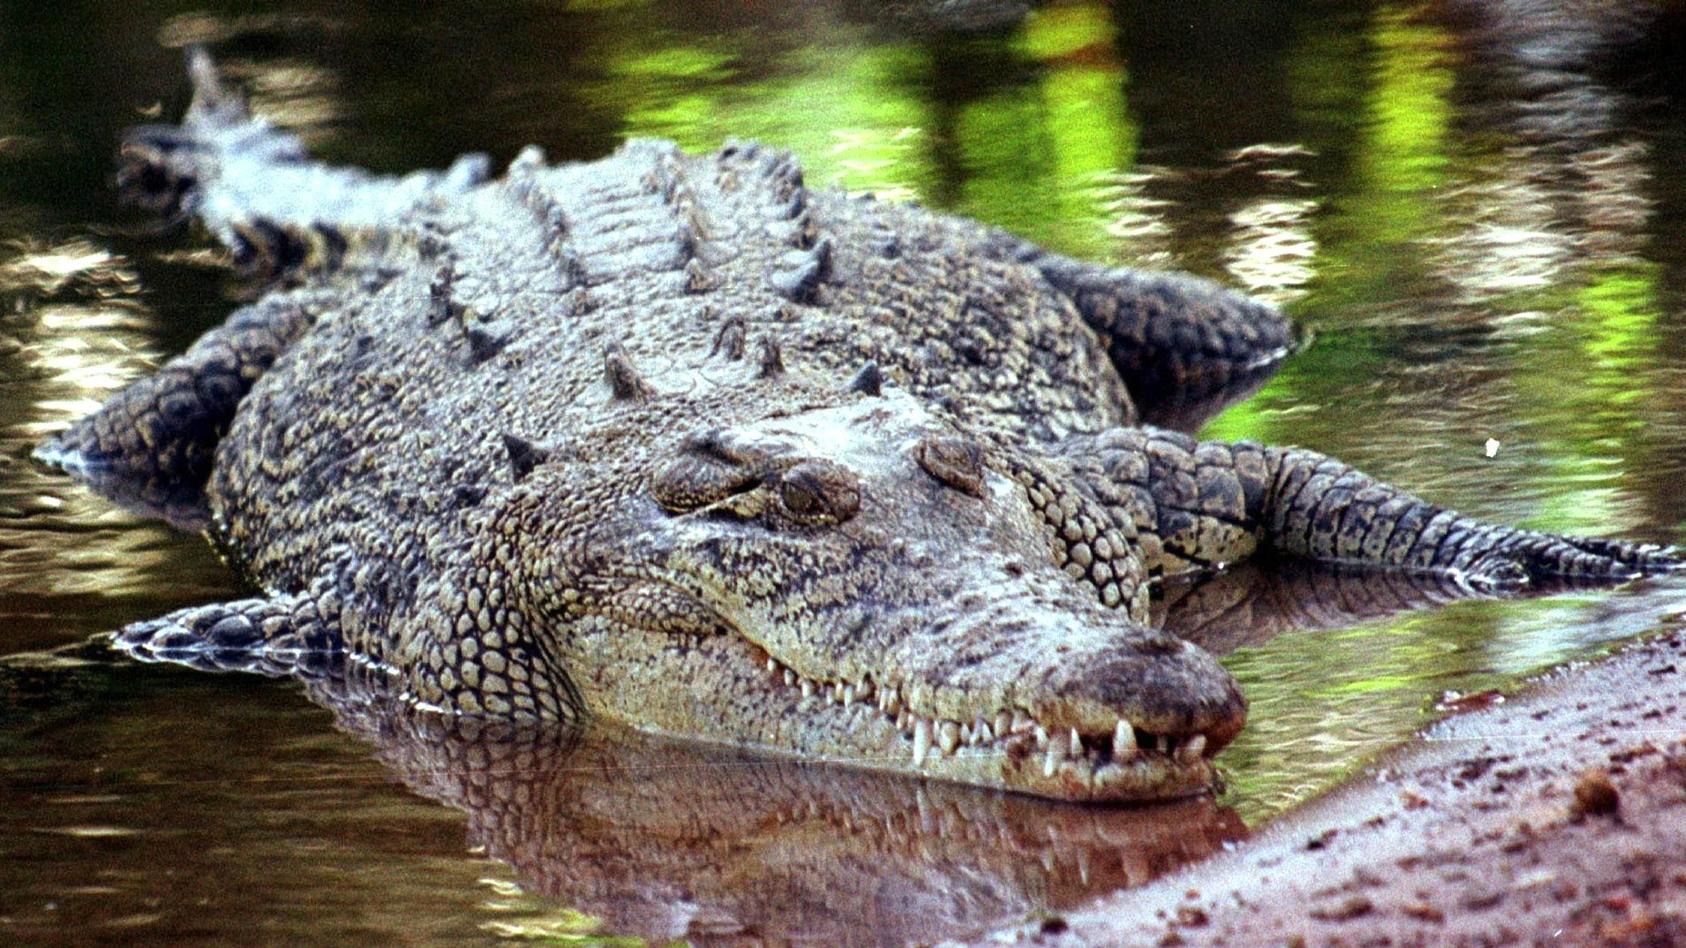 ohne-sich-gepaart-zu-haben-legt-eine-krokodildame-in-costa-rica-mehrere-befruchtete-eier-symbolbild